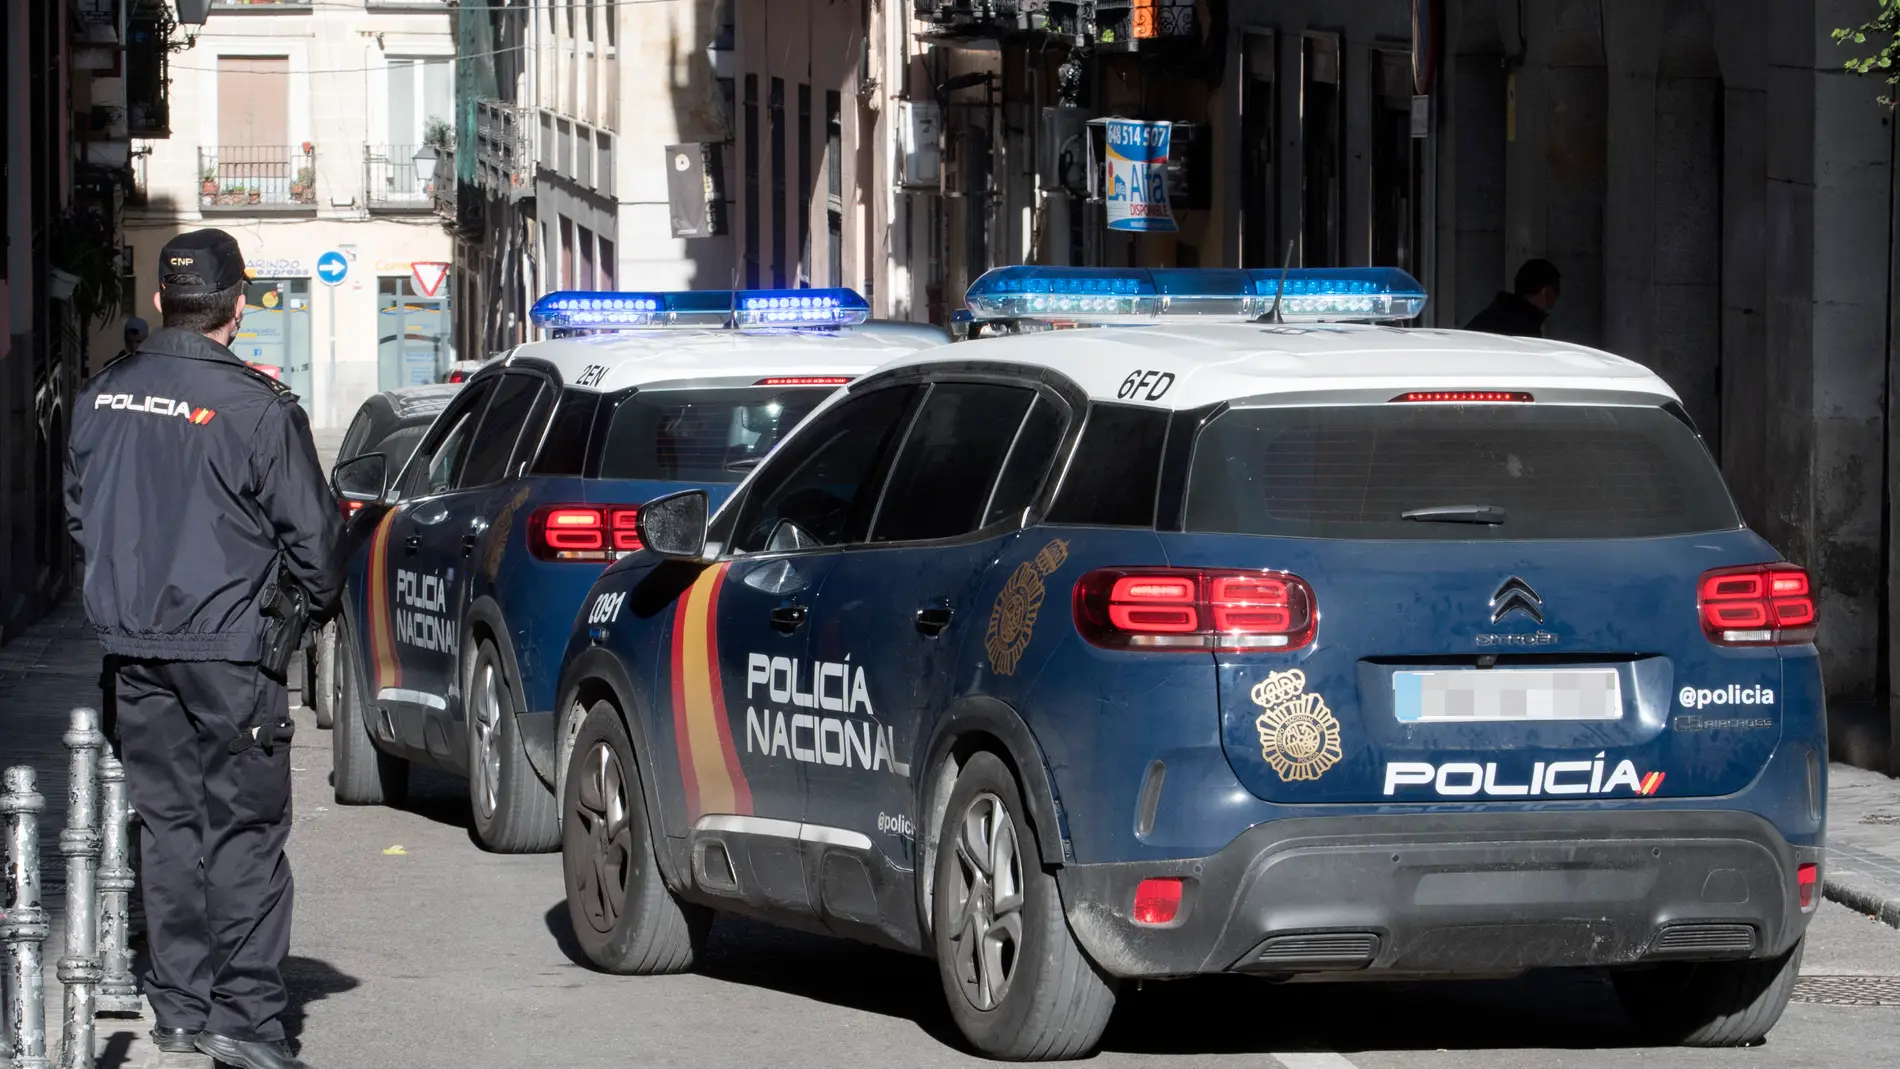  coches de la Policía Nacional, en Madrid | Foto de archivo